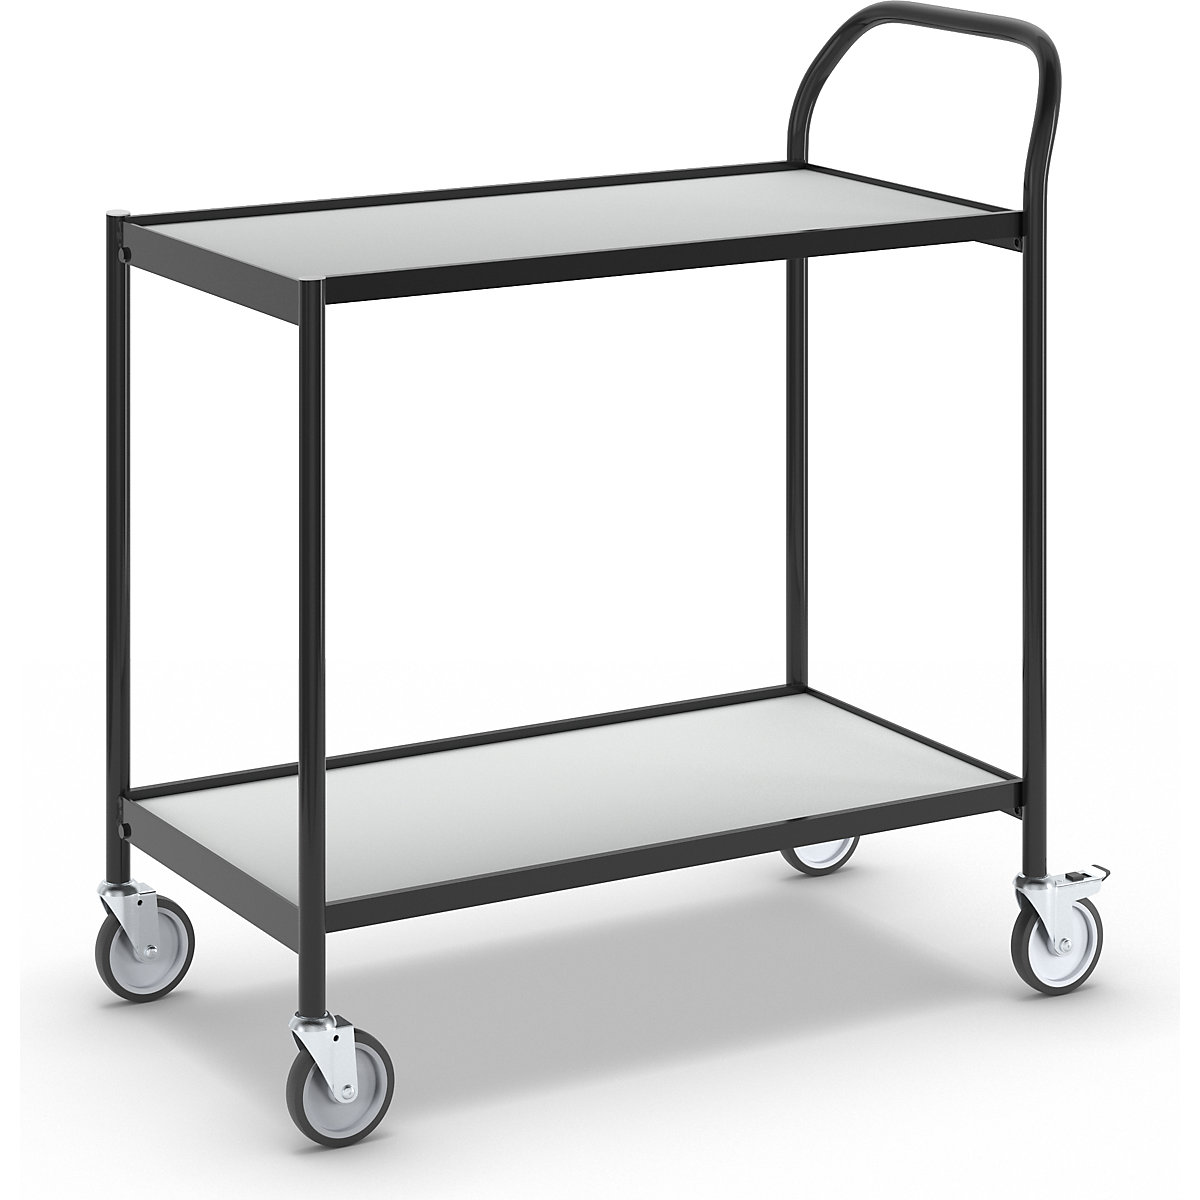 Stolový vozík – HelgeNyberg, 2 etáže, d x š 800 x 420 mm, černá / šedá-3